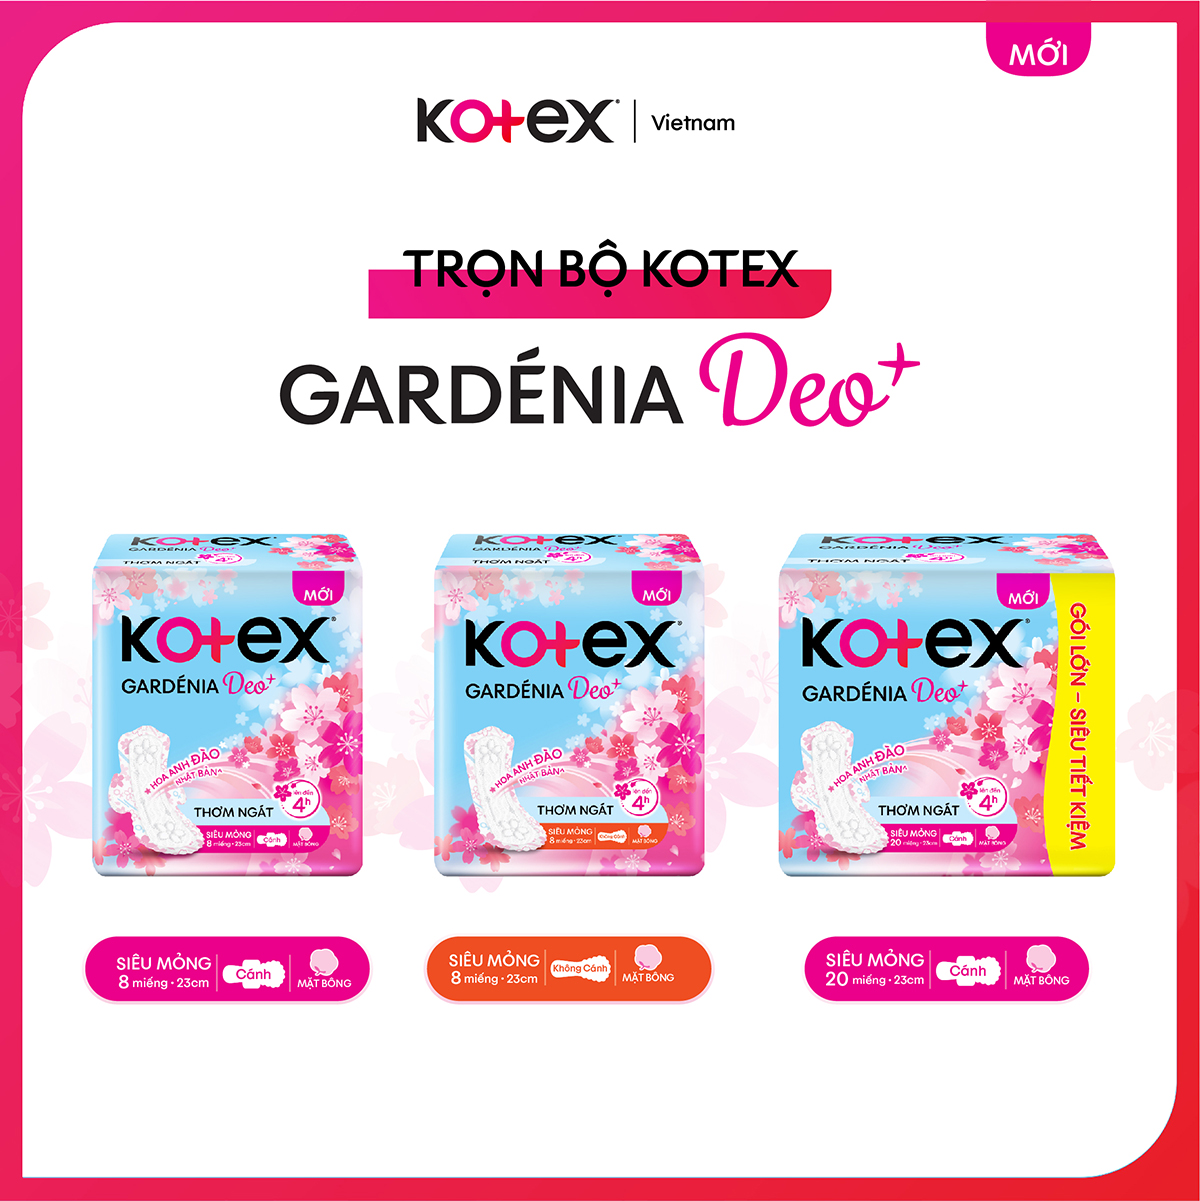 [Mới] Combo 4 Gói BVS Kotex Gardenia Deo+ Hương Hoa Anh Đào, Mặt Bông, Siêu Mỏng Cánh, Gói (20+4) Miếng